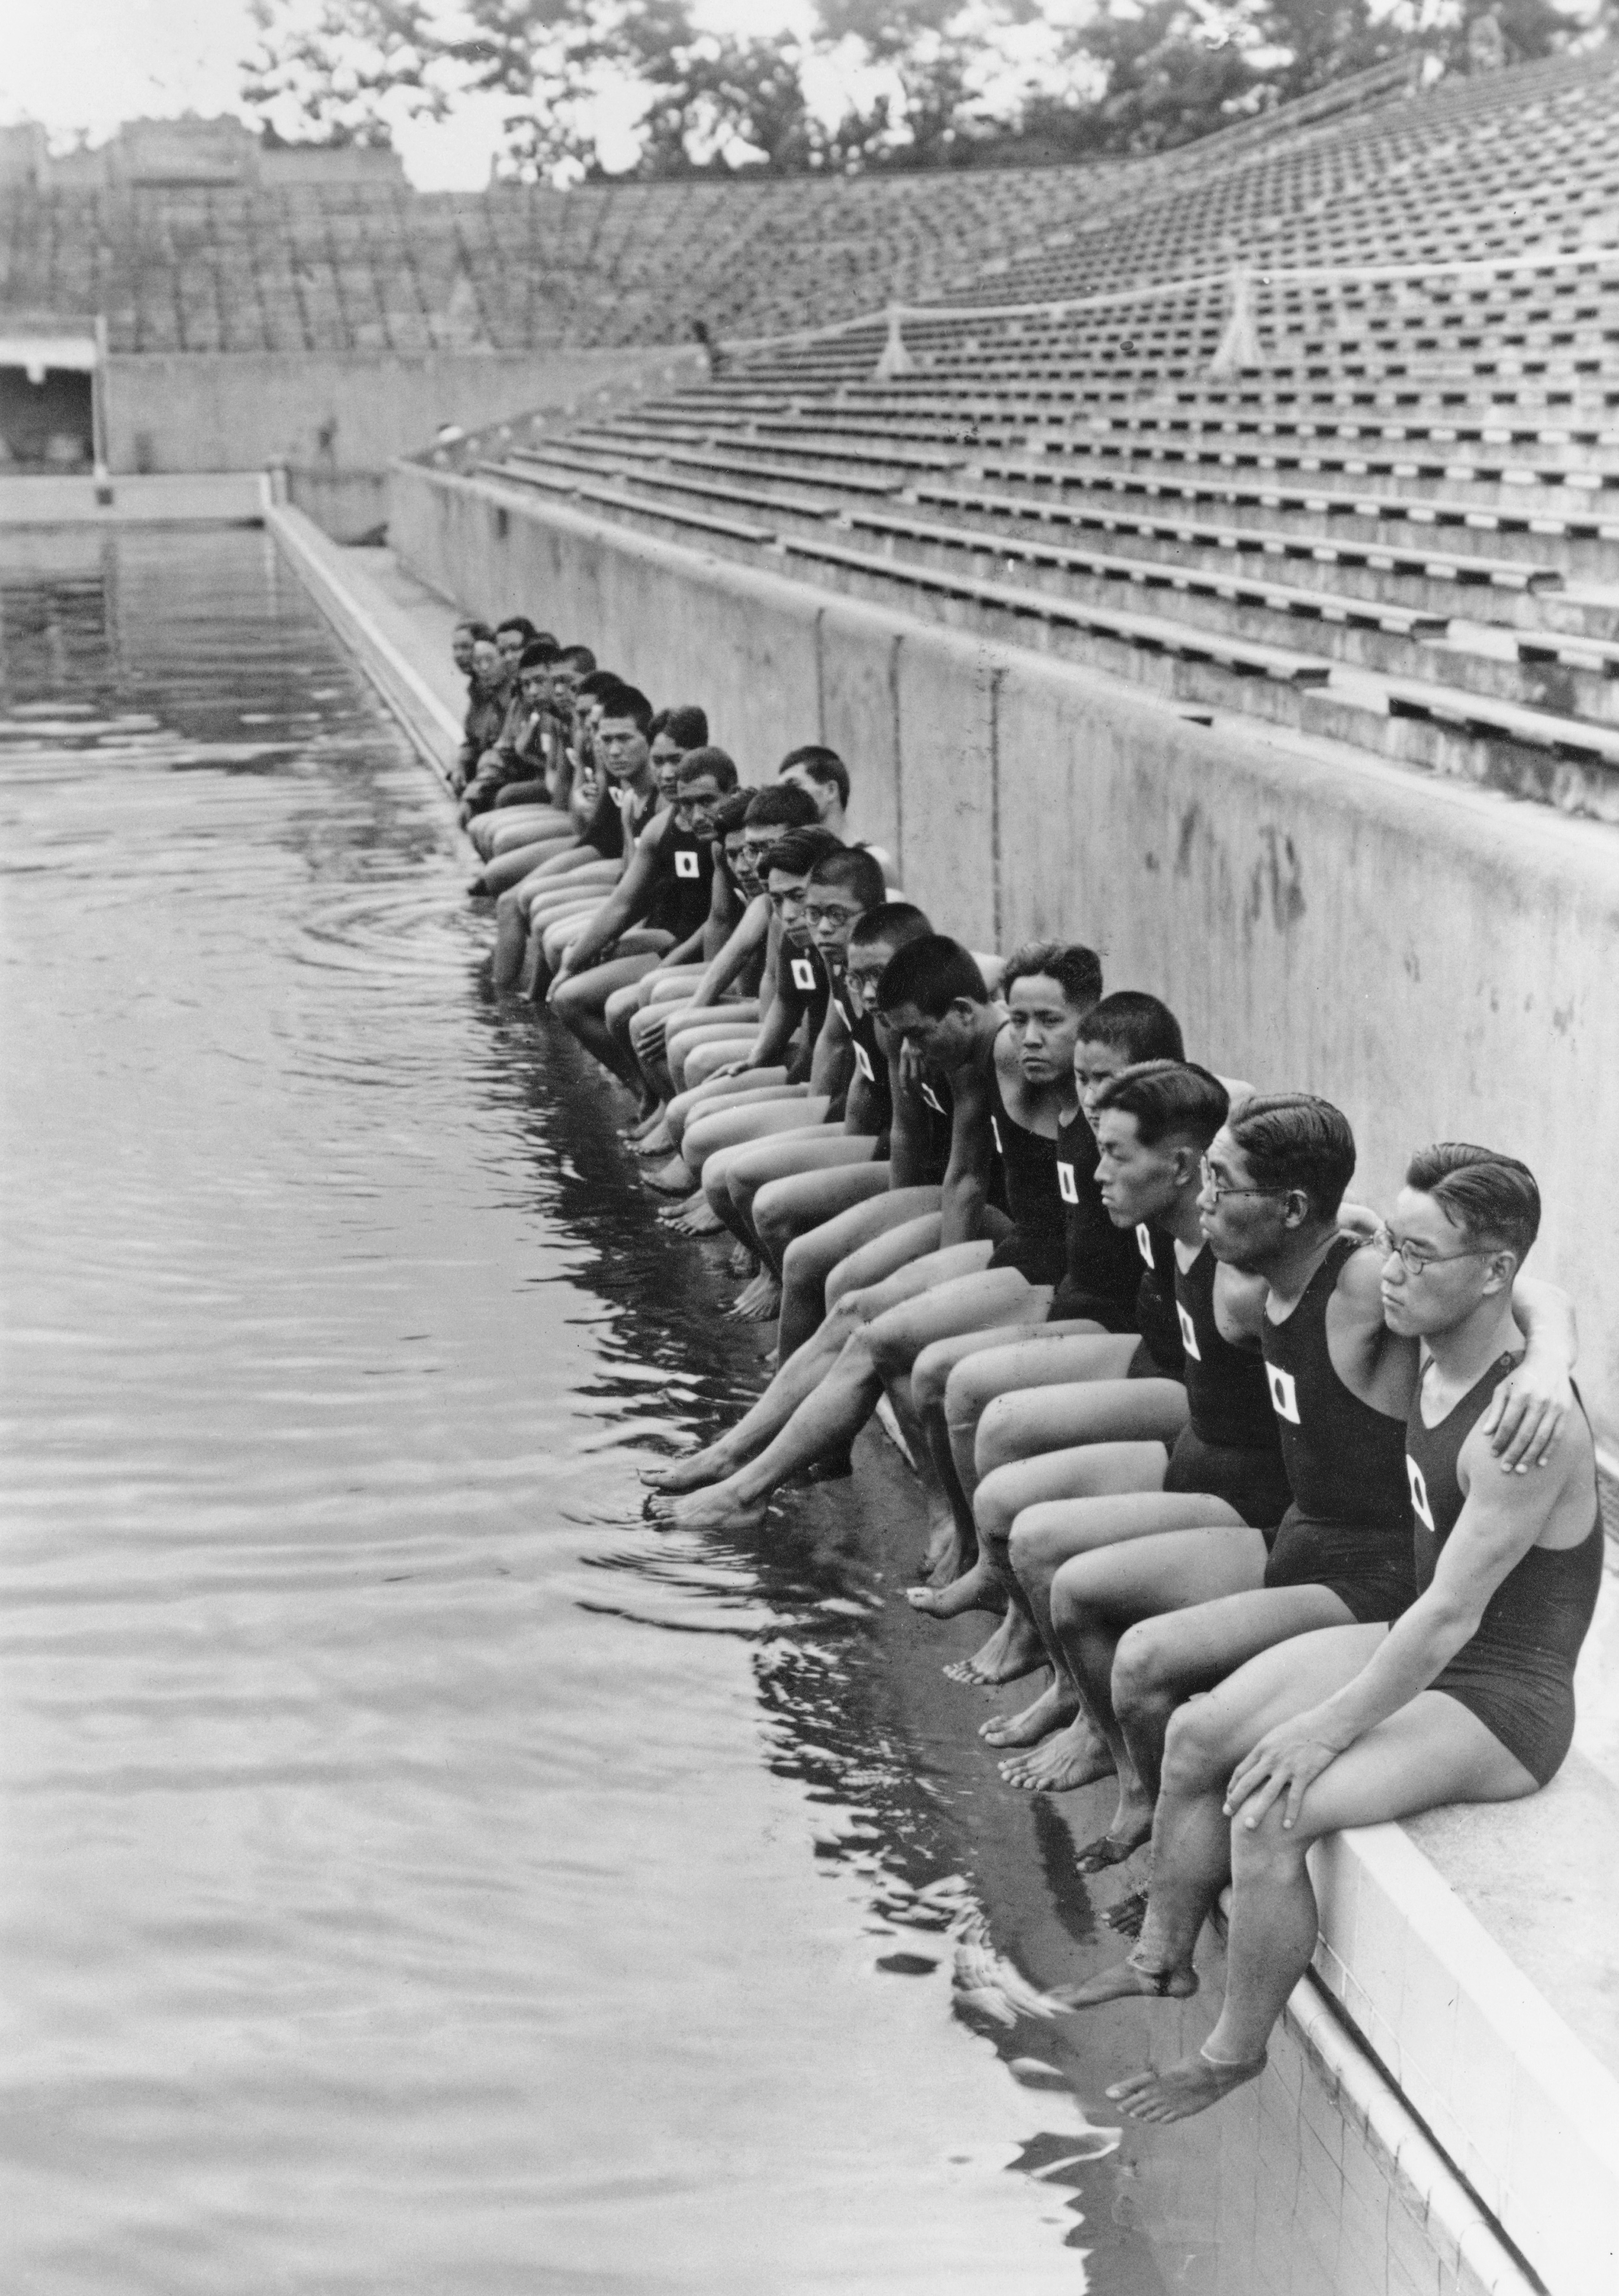 La squadra olimpica di nuoto maschile giapponese